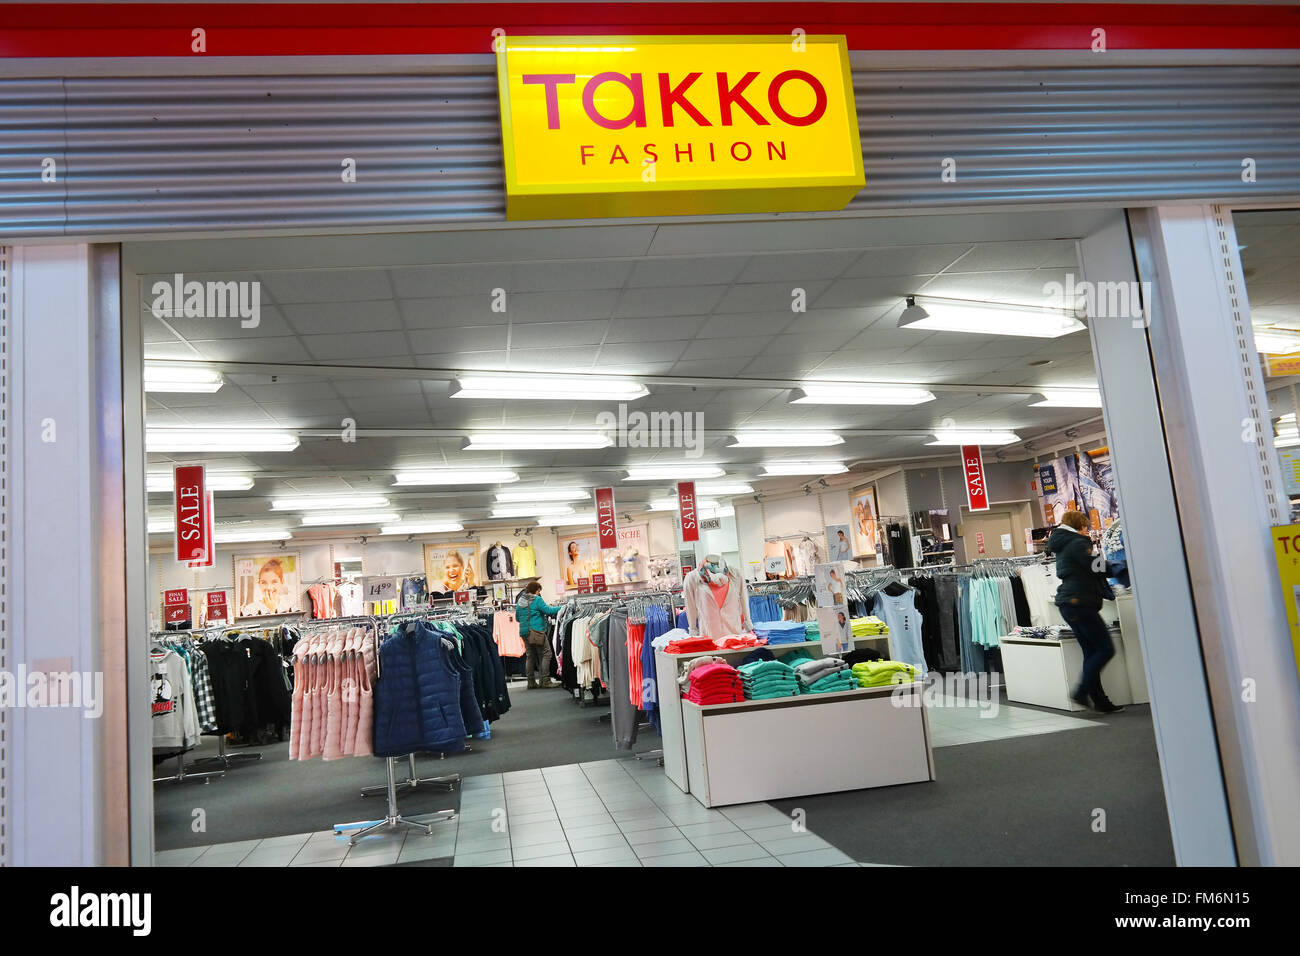 Branch of Takko Fashion, textile retailer Stock Photo - Alamy